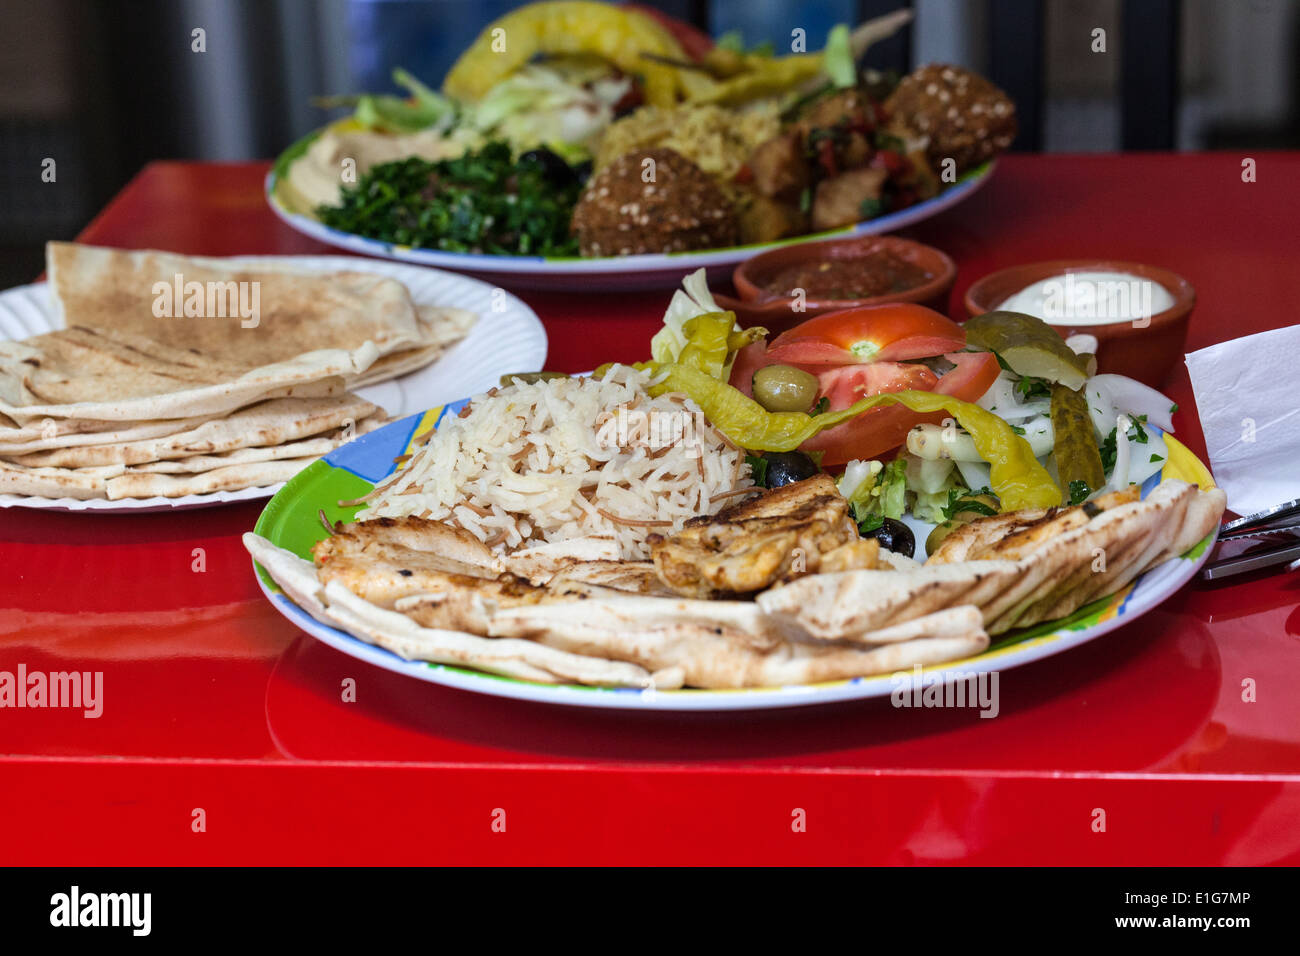 Lebanese food Stock Photo